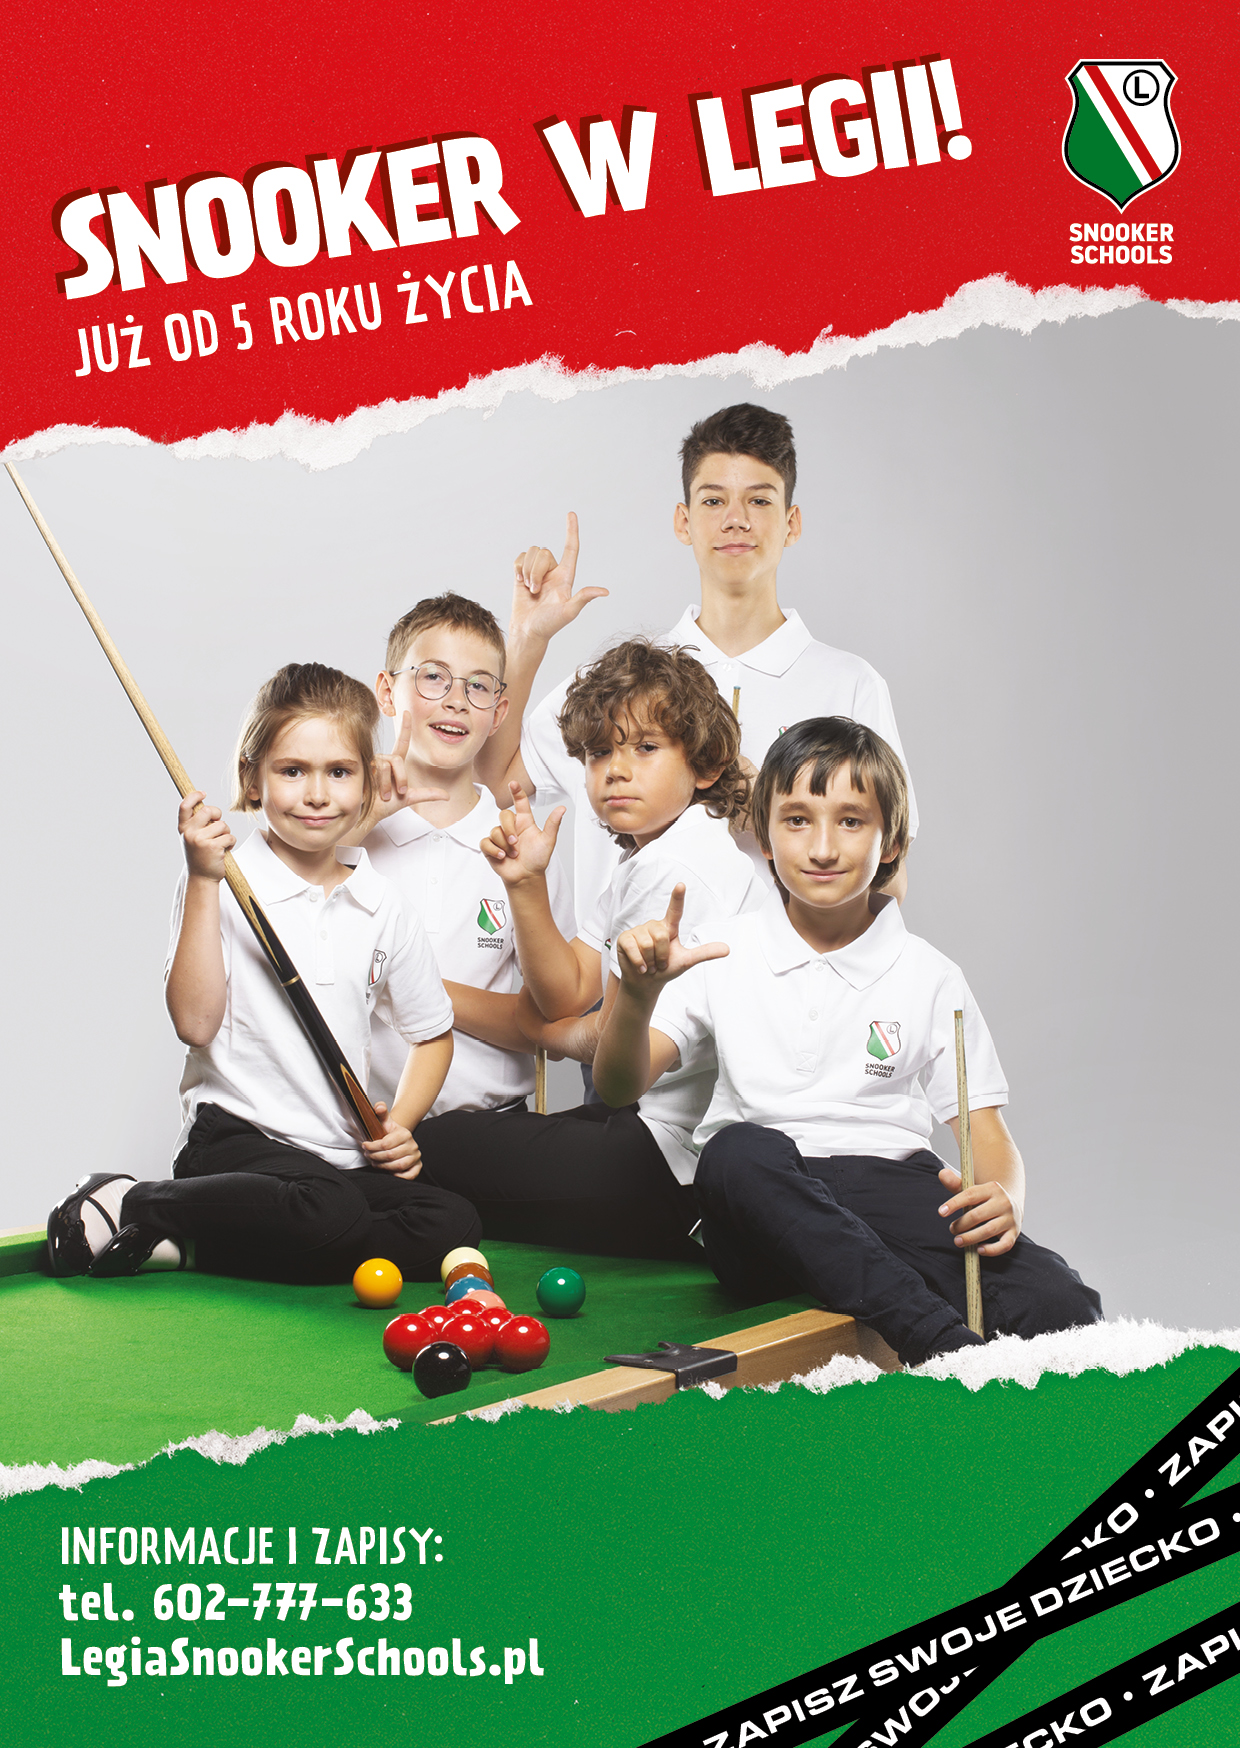 Legia Warszawa uruchamia szkołę snookera – Legia Snooker Schools